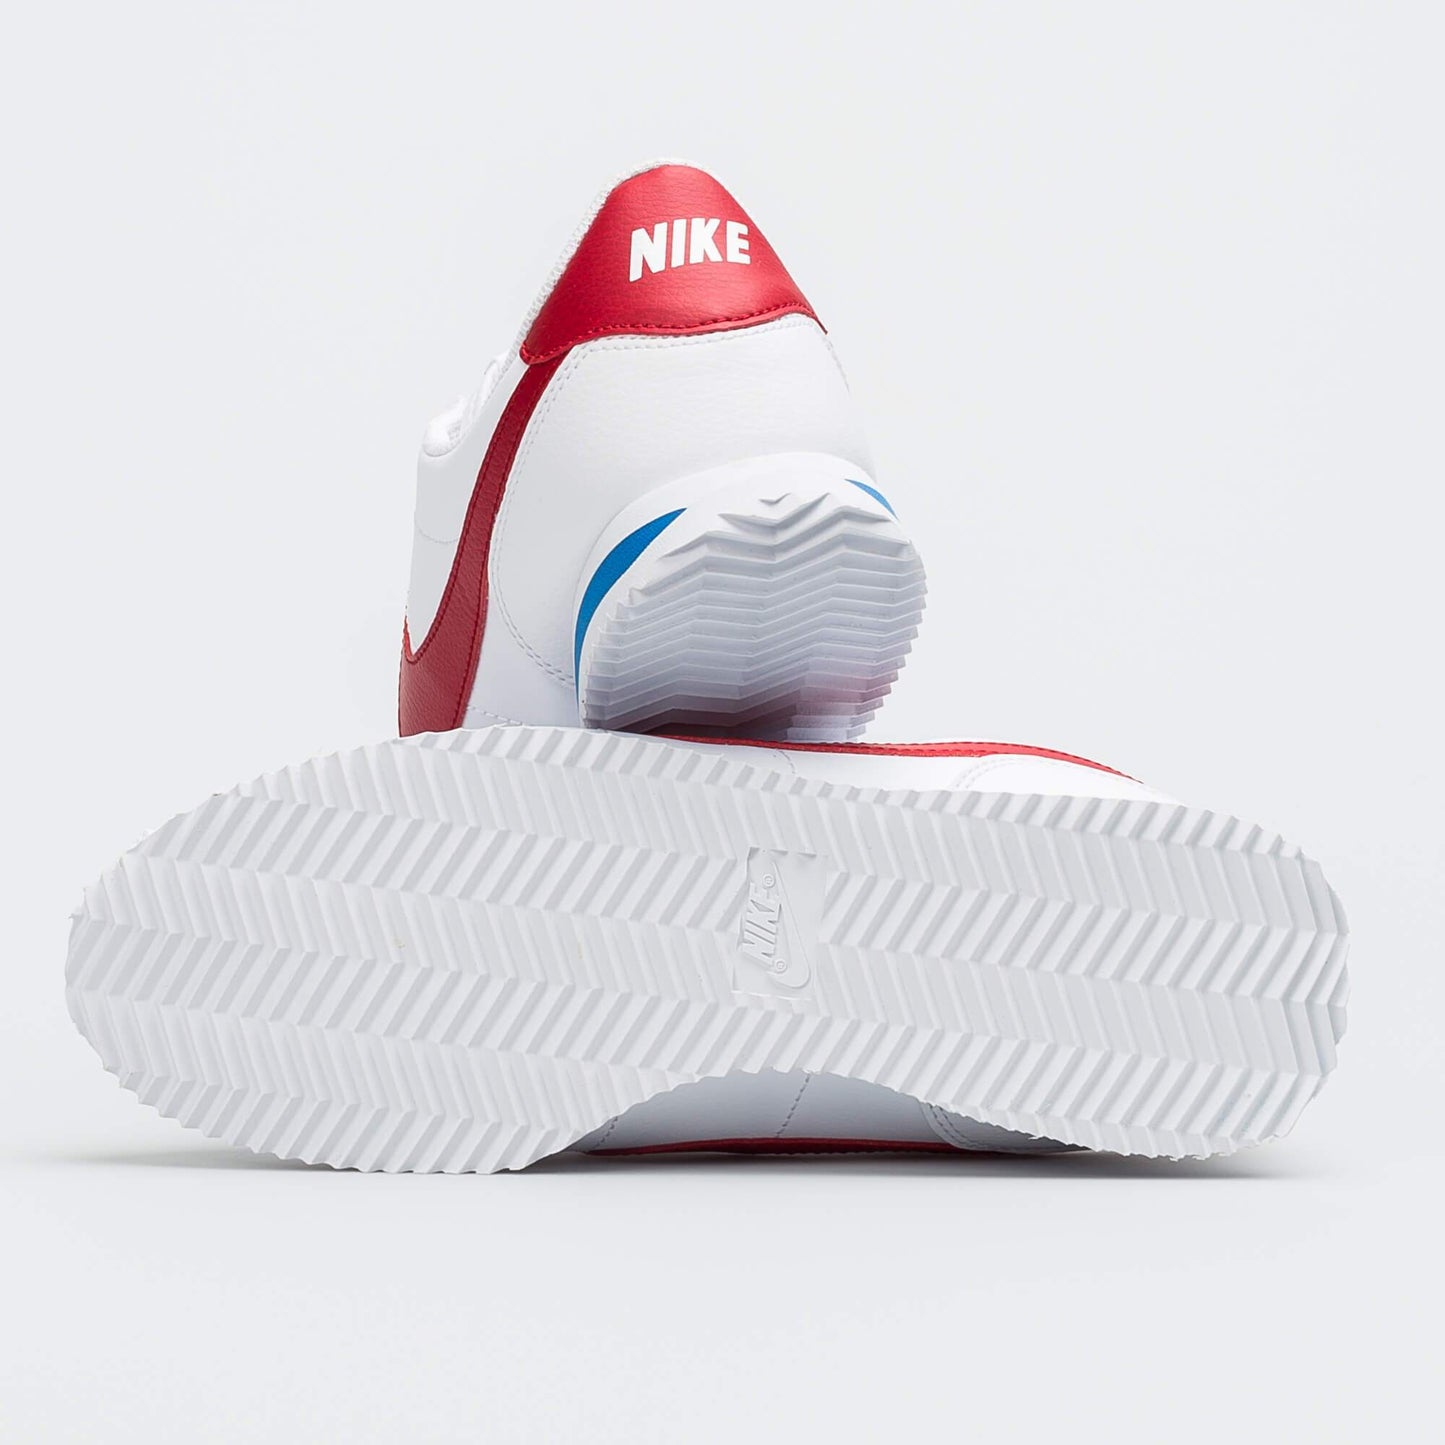 Nike Athletic Shoes Nike - Cortez Basic Shoes